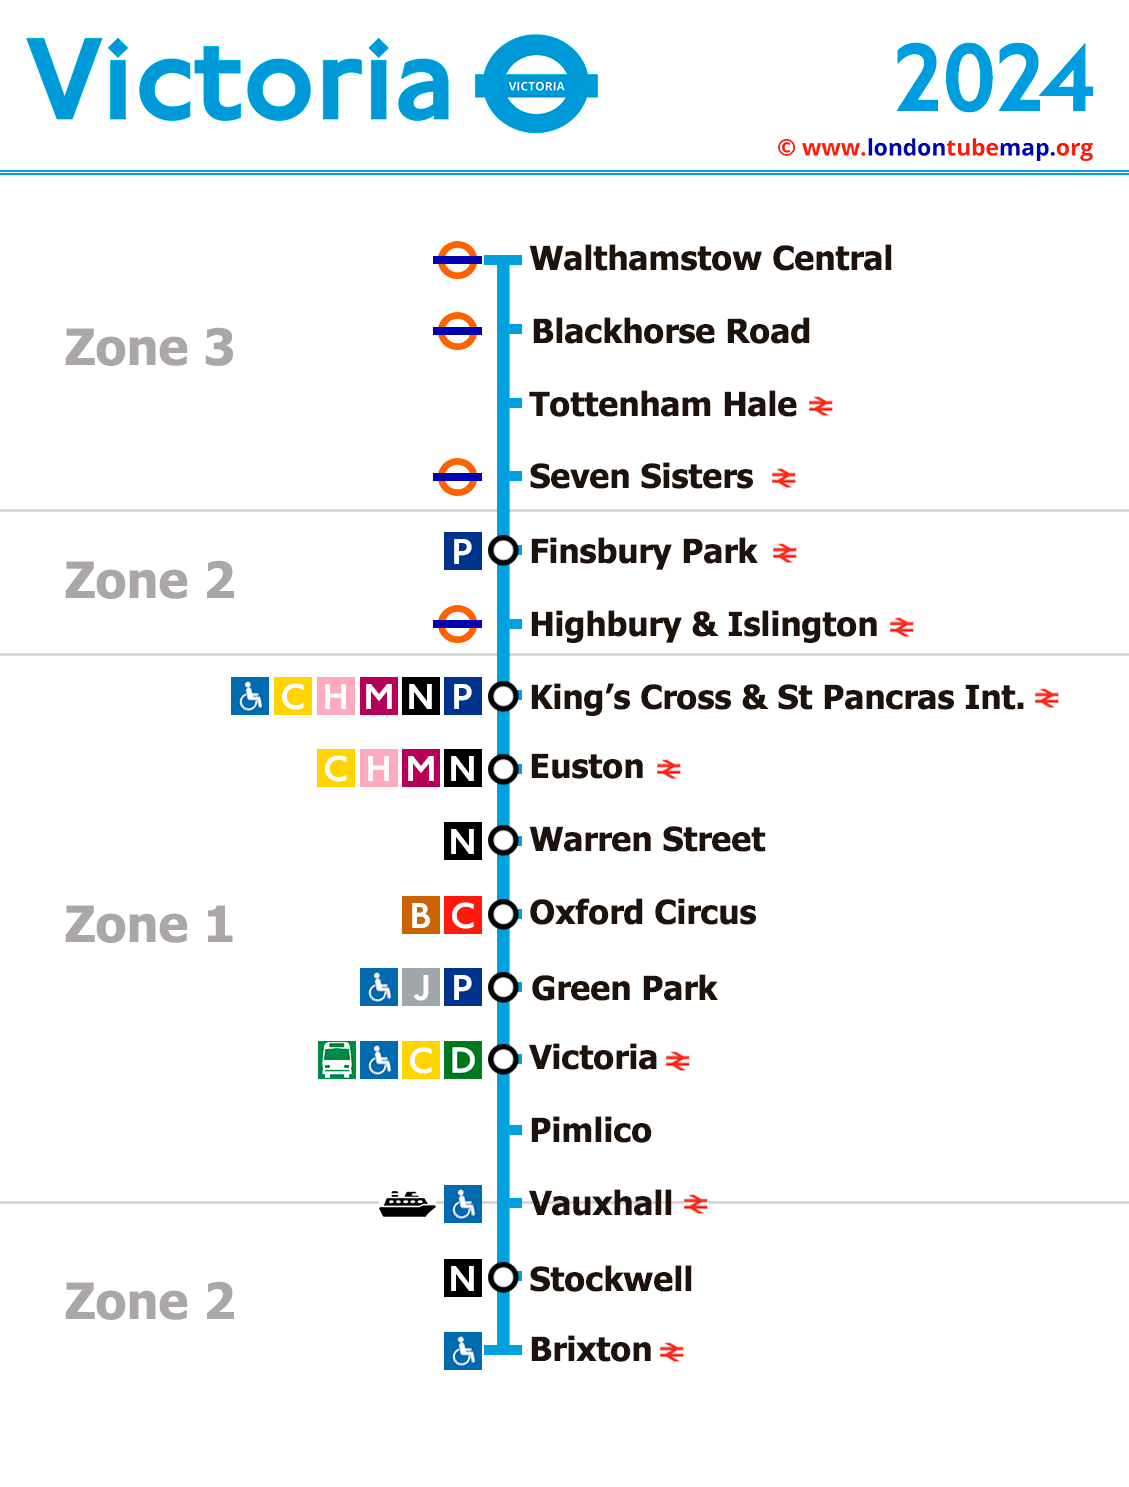 Victoria tube line 2024